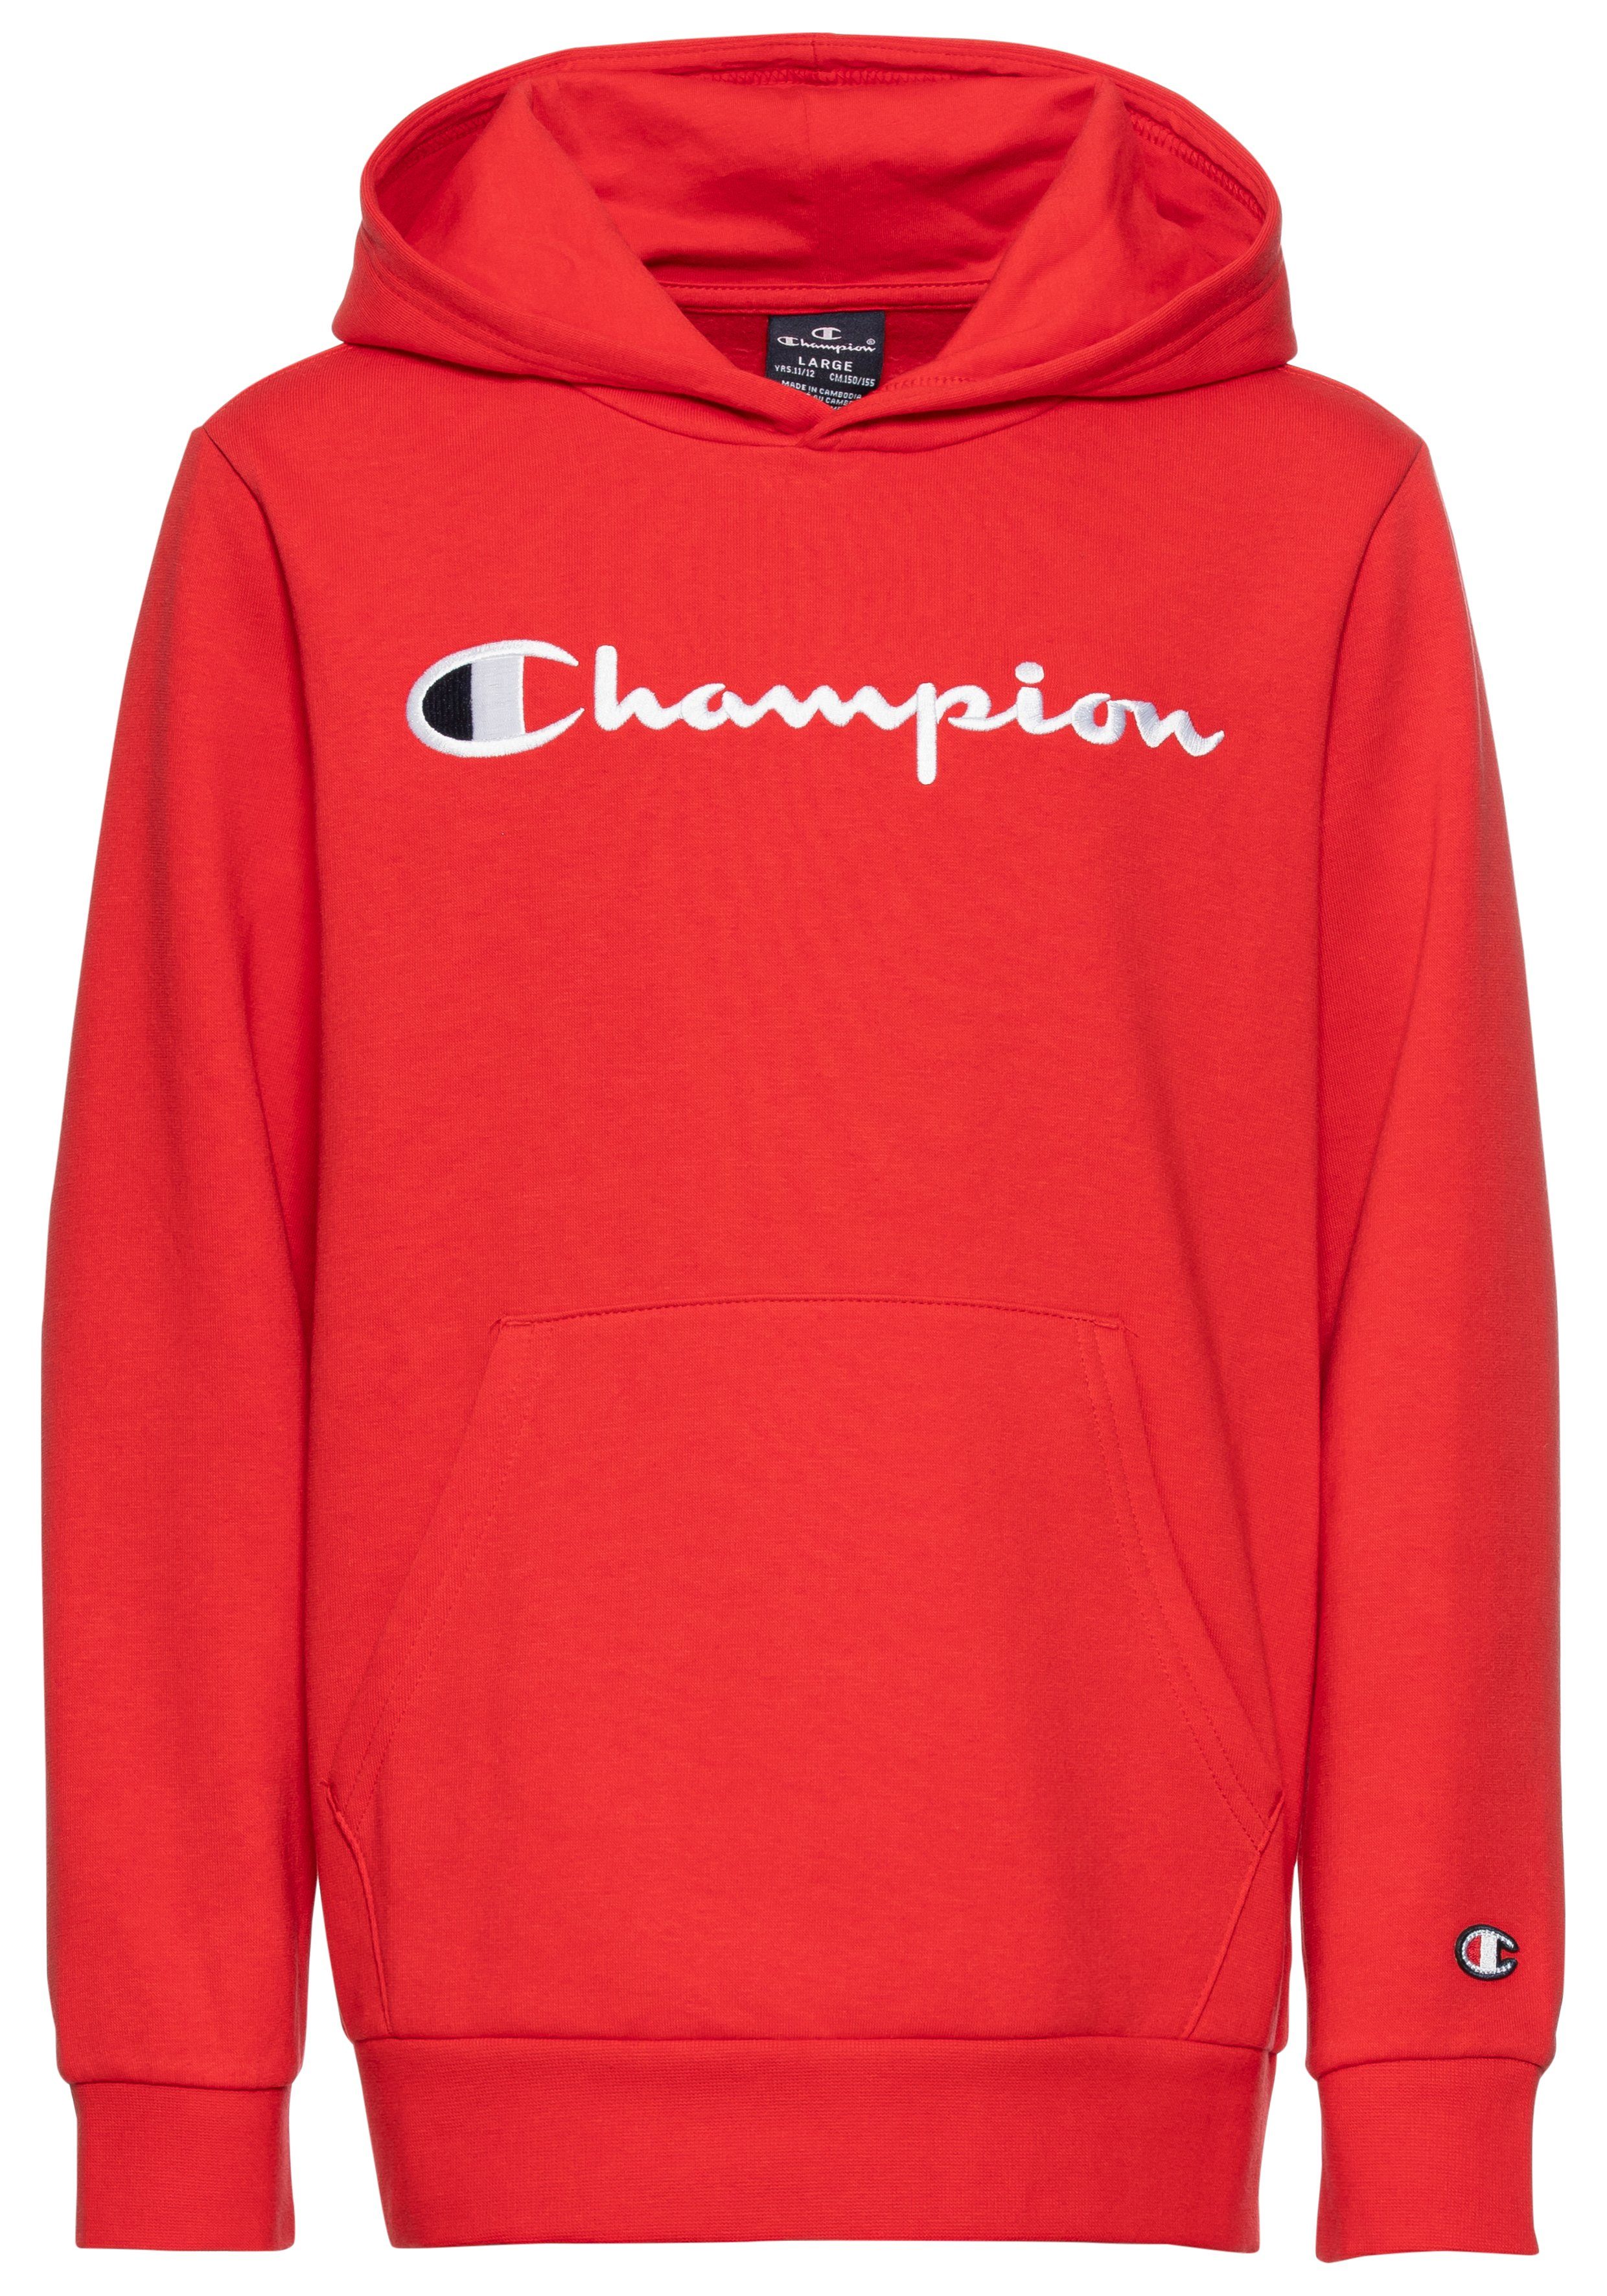 Hooded Kapuzensweatshirt Sweatshirt rot Icons Champion